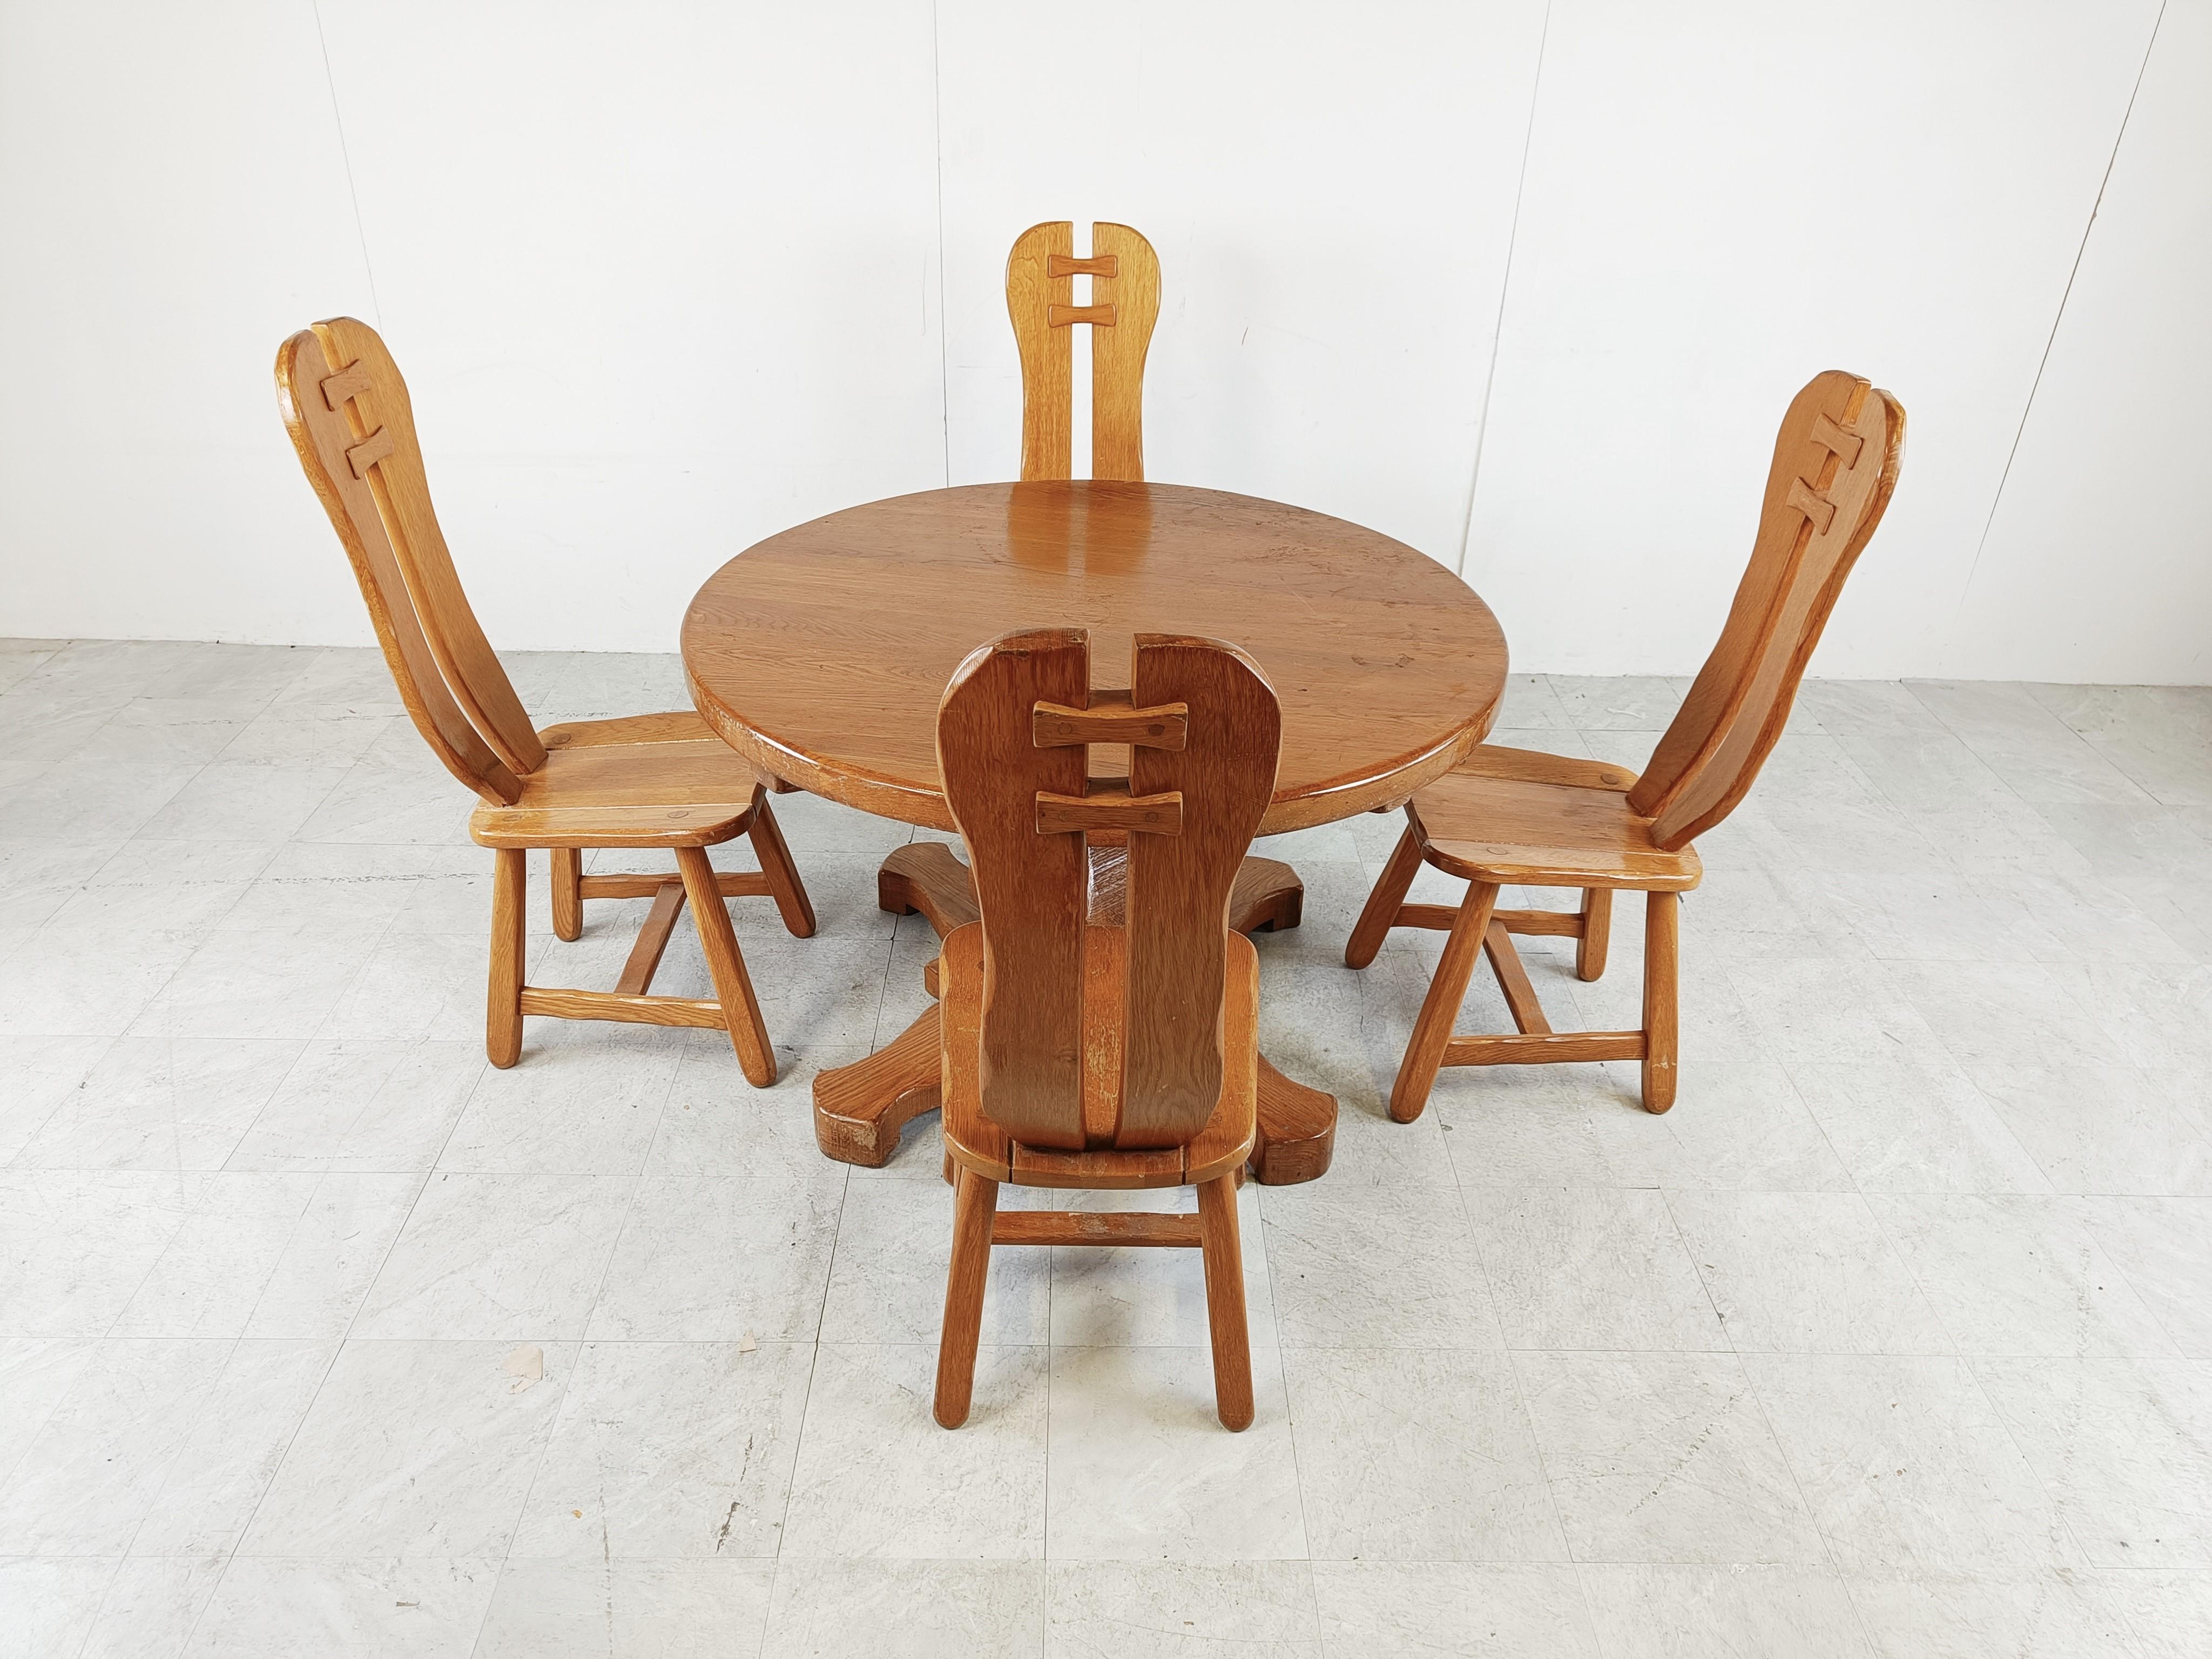 Chaises de salle à manger robustes et artisanales avec table assortie produites par Depuydt Kunstmeubelen en Belgique.

L'ensemble est fabriqué en chêne massif.

Il est rare d'avoir les chaises et la table.

Magnifique dos fendu avec des pièces en